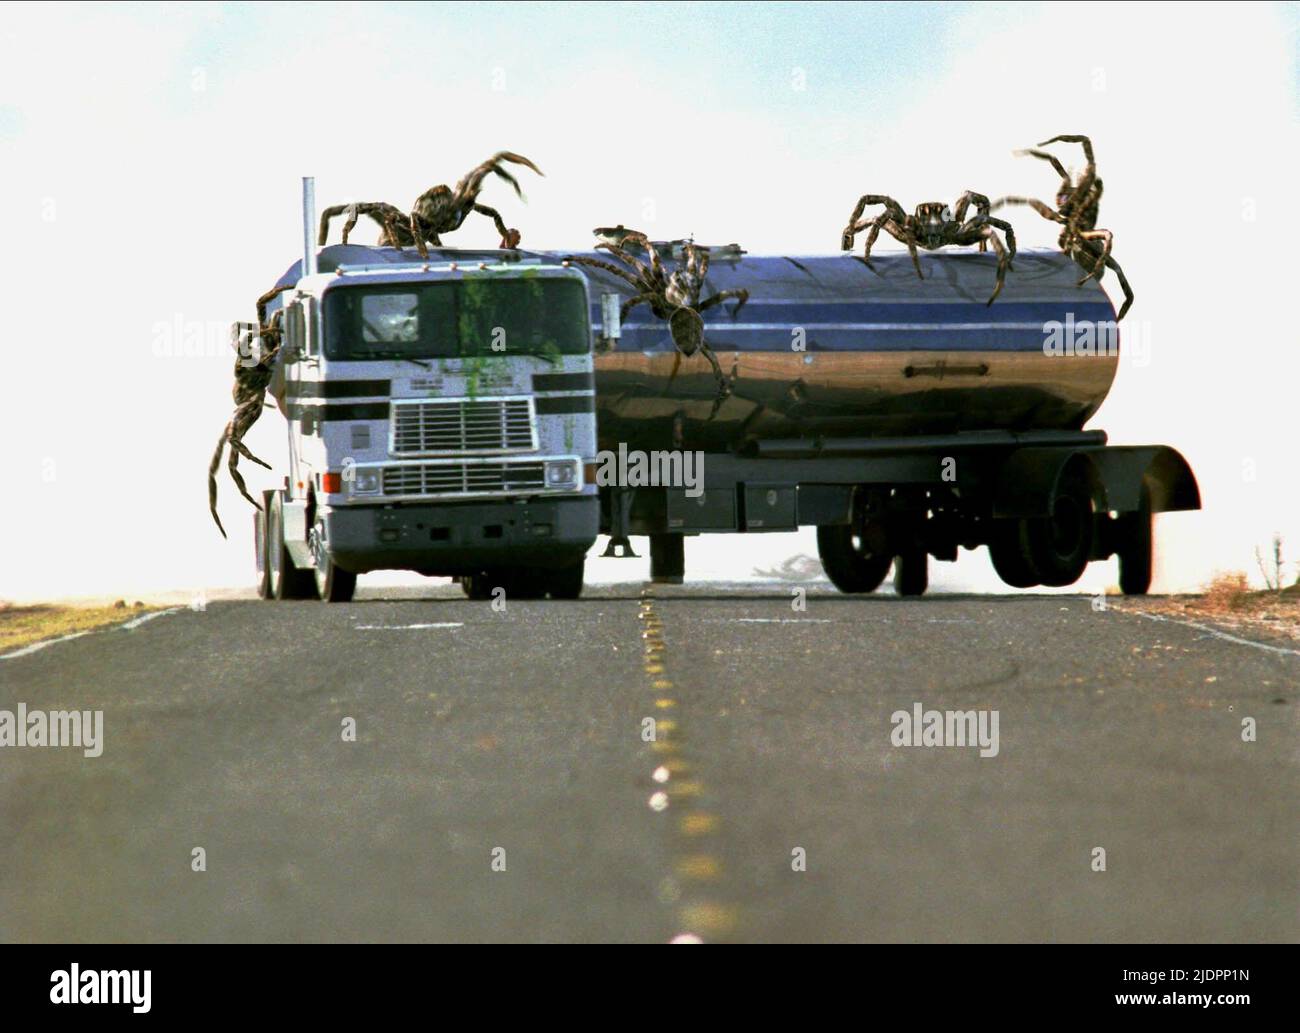 GIANT SPIDERS ATTTACK TANKER, EIGHT LEGGED FREAKS, 2002, Stock Photo